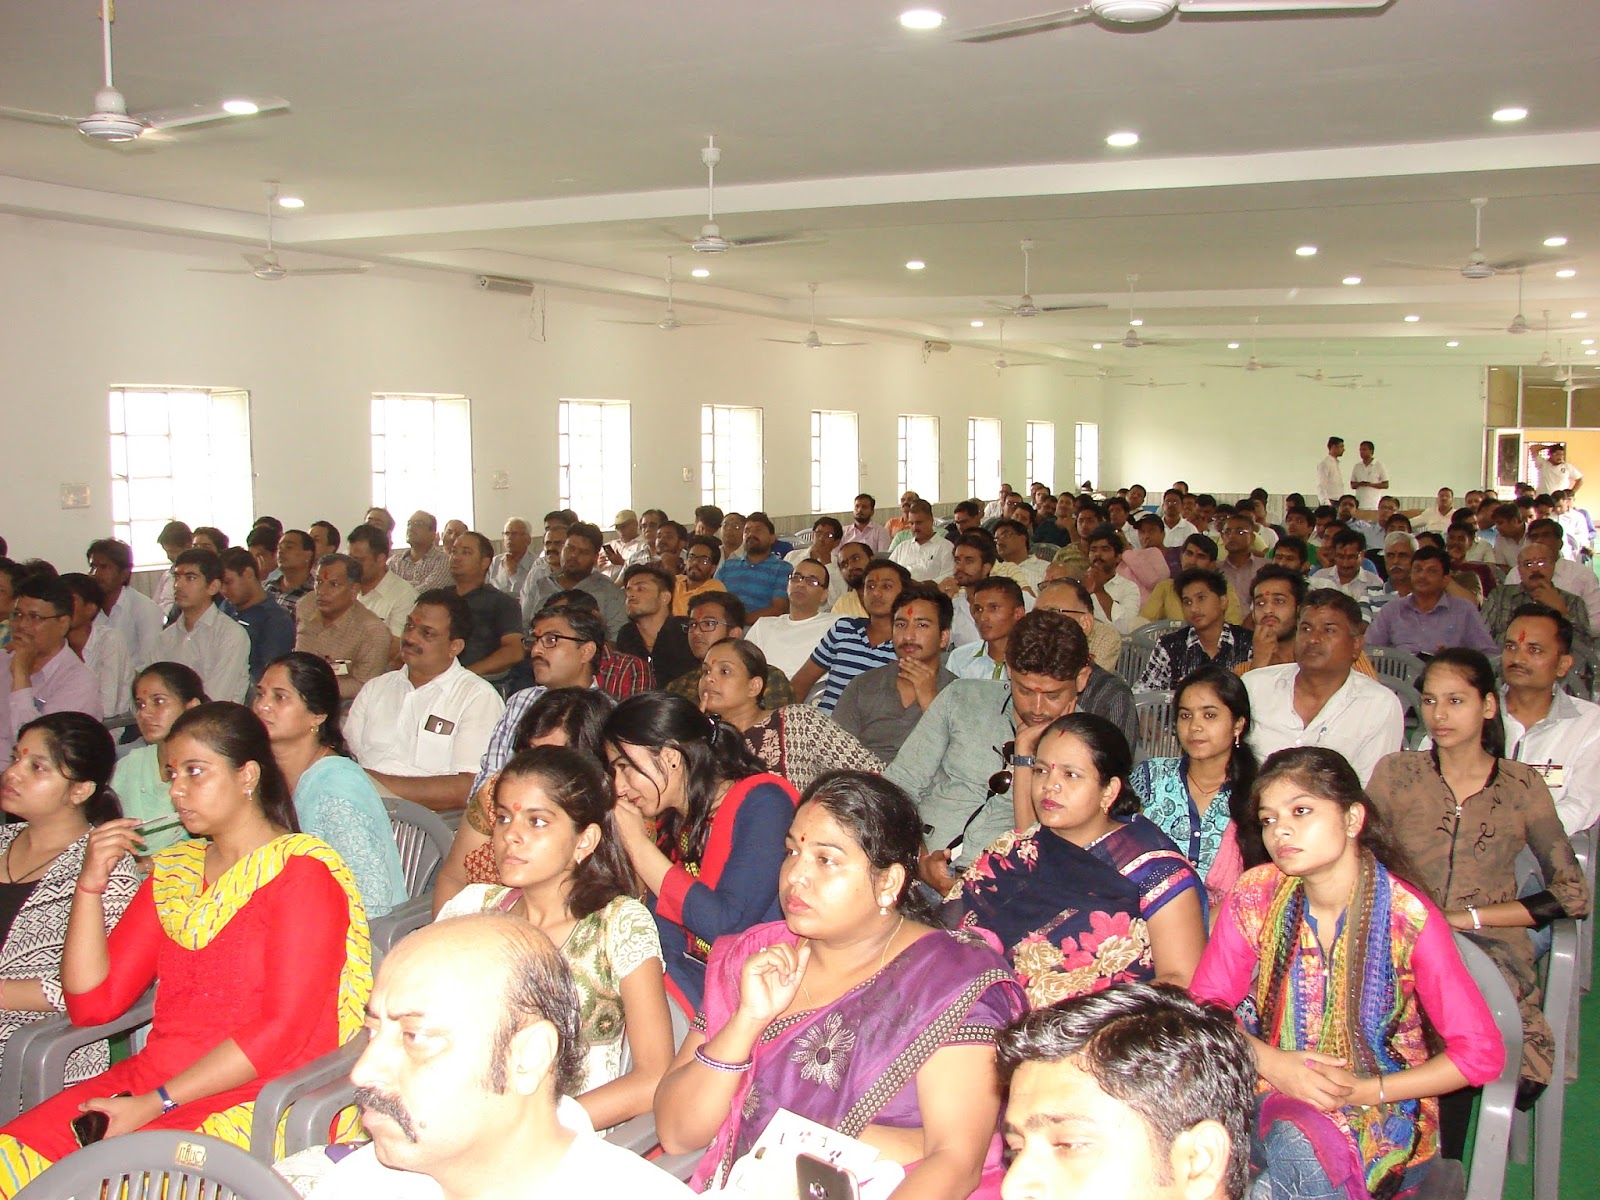 राष्ट्रीय स्वयंसेवक संघ (जोधपुर महानगर) के प्रचार विभाग की सोशल मीडिया कार्यशाला आयोजित